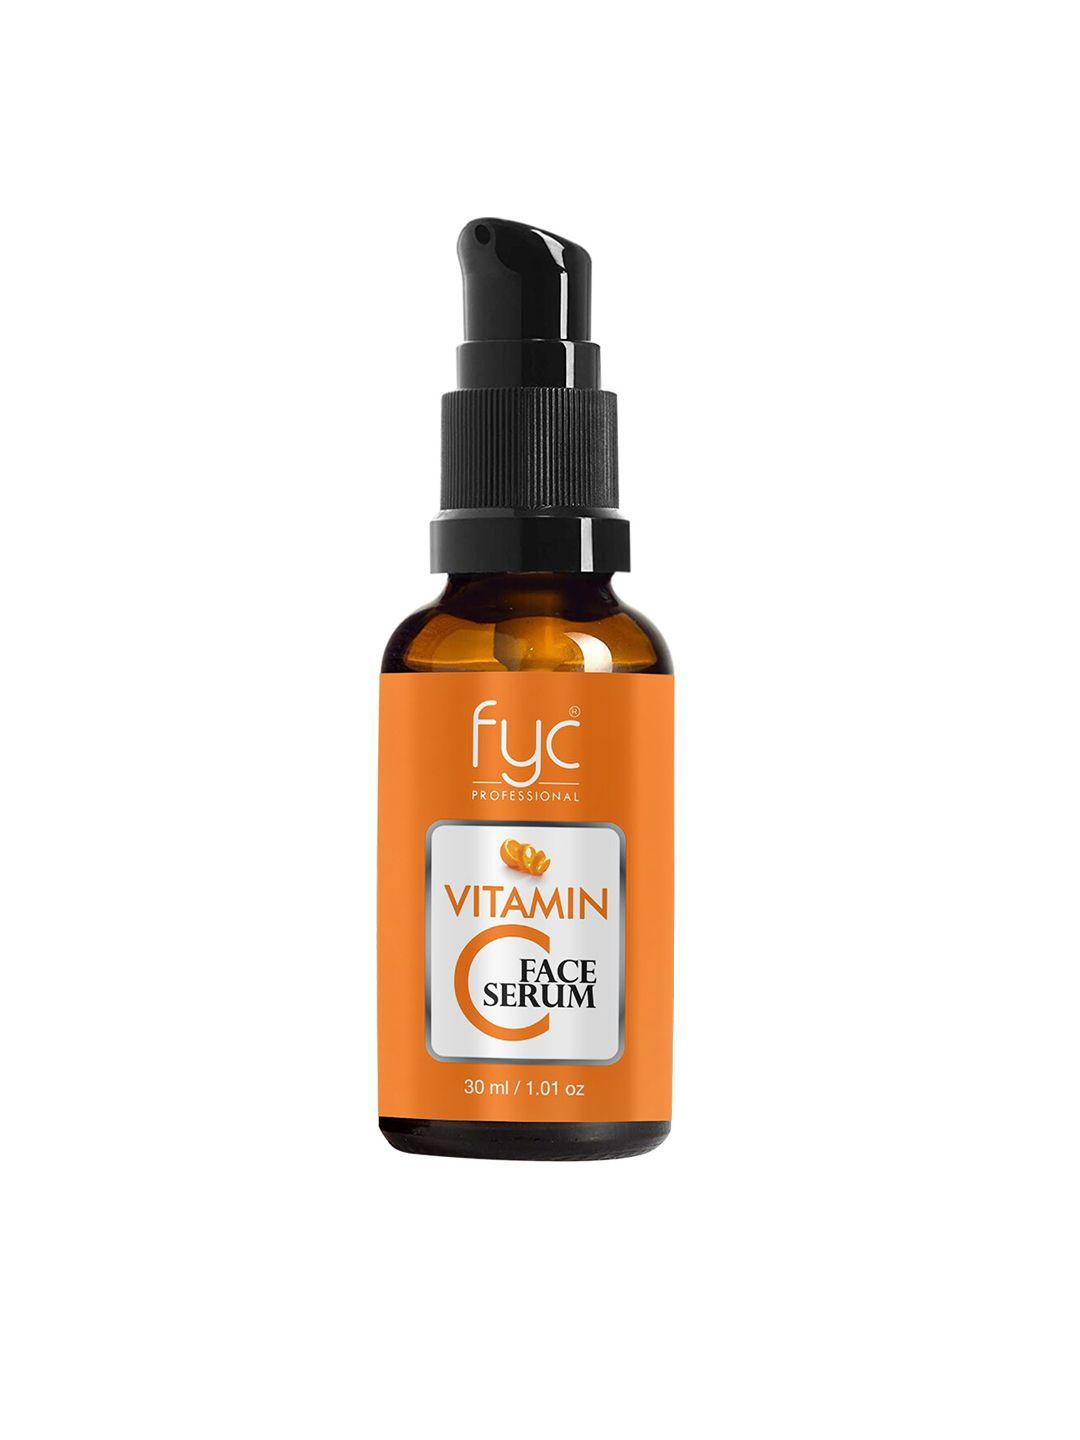 fyc professional vitamin c face serum 30ml